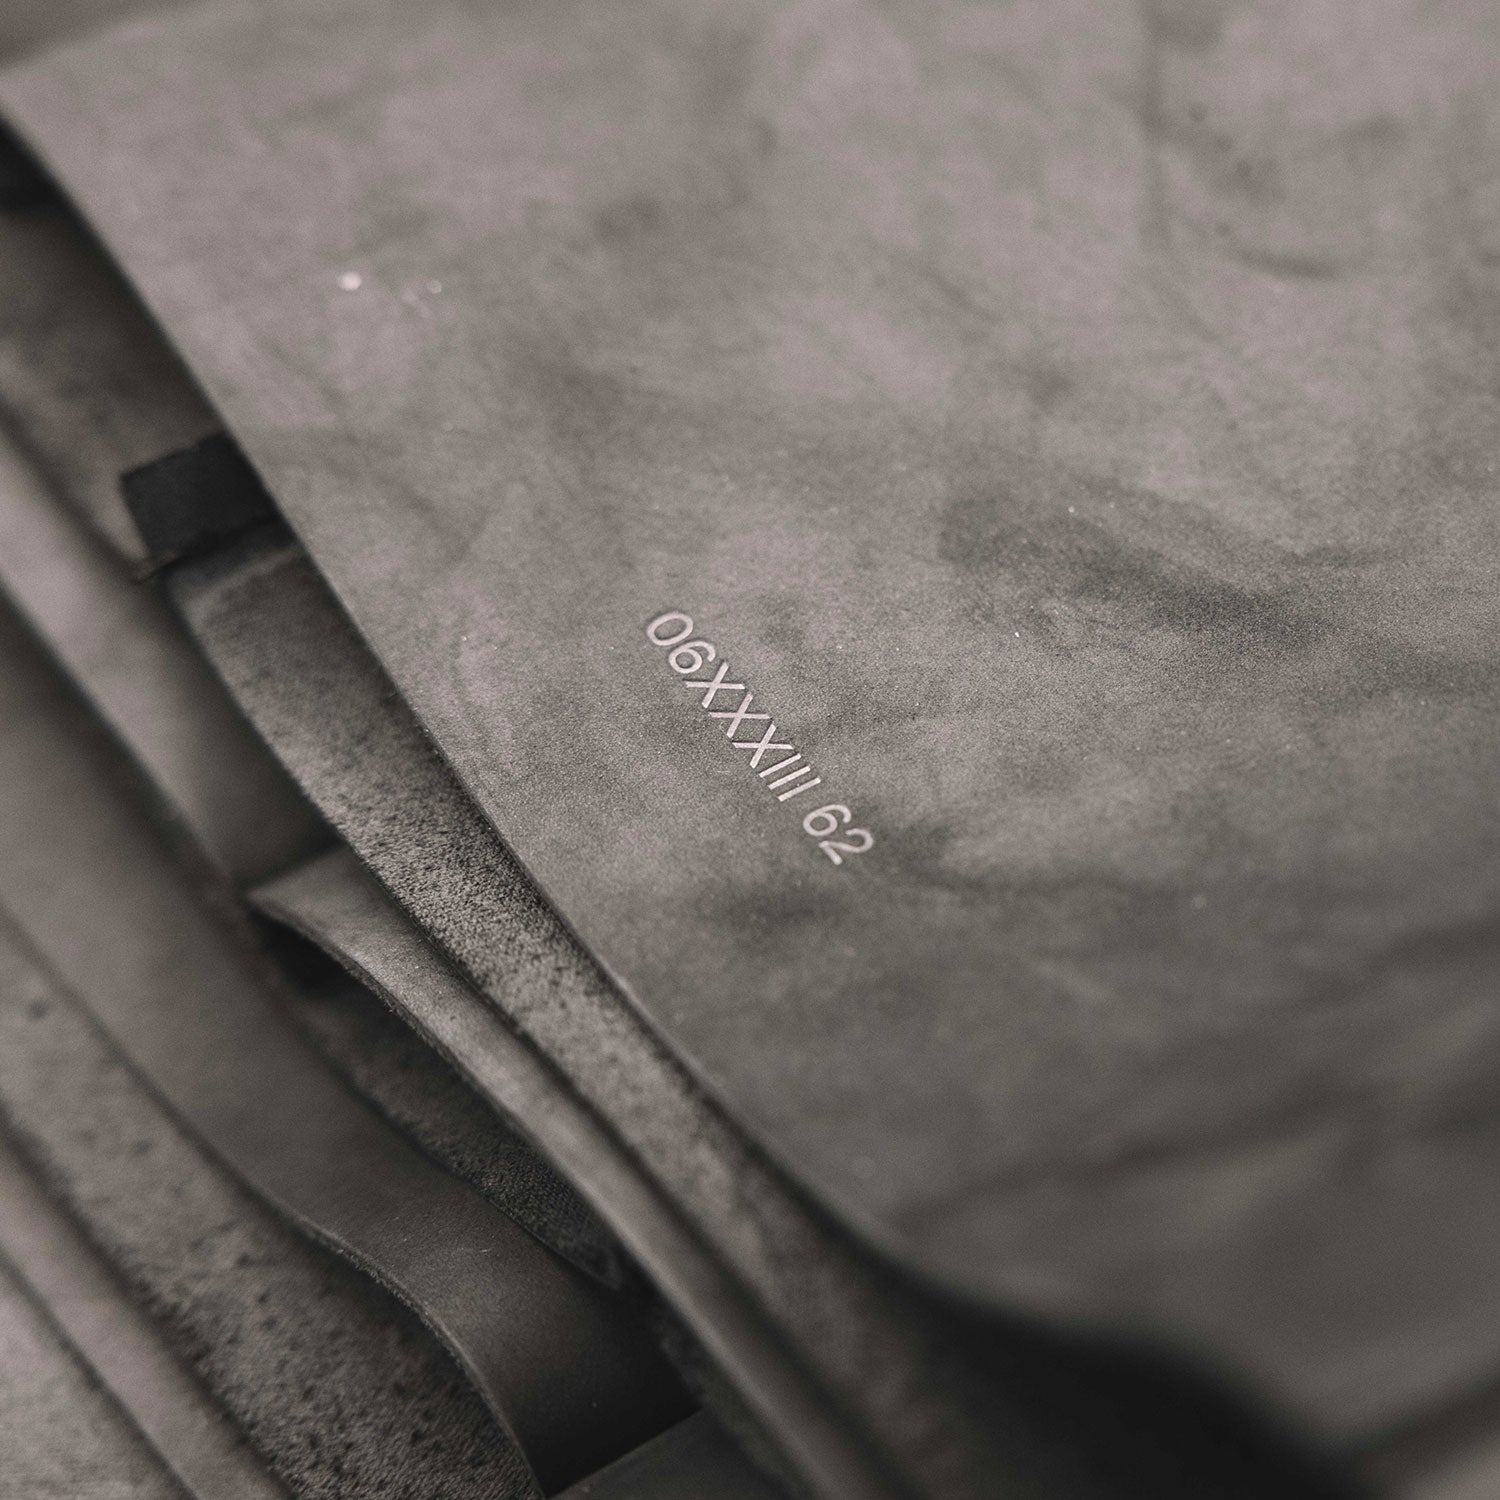 Seriencode der Lederpflegetasche von L'Evoine